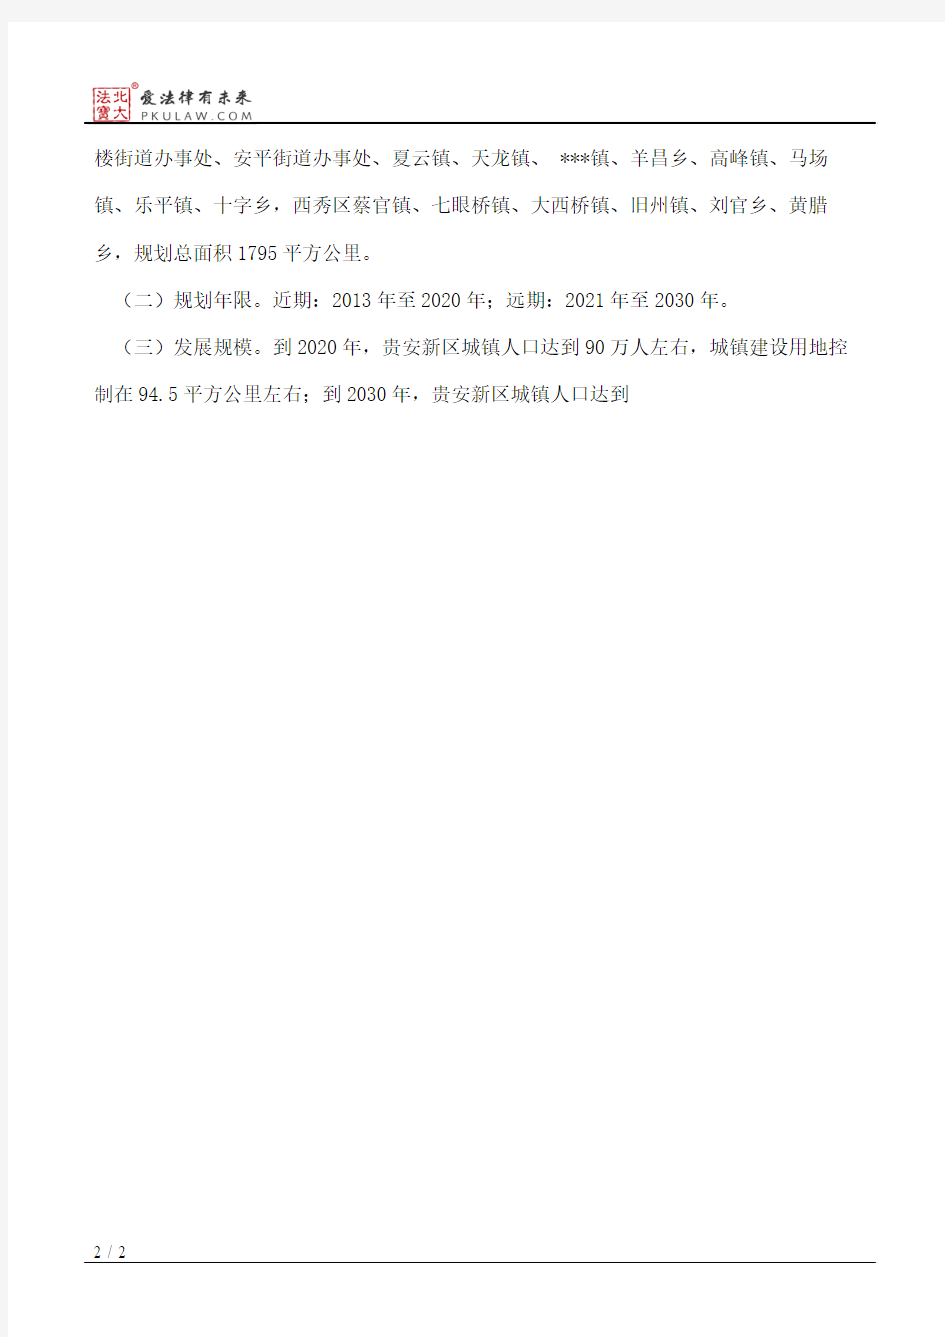 贵州省人民政府关于贵安新区总体规划(2013—2030年)的批复